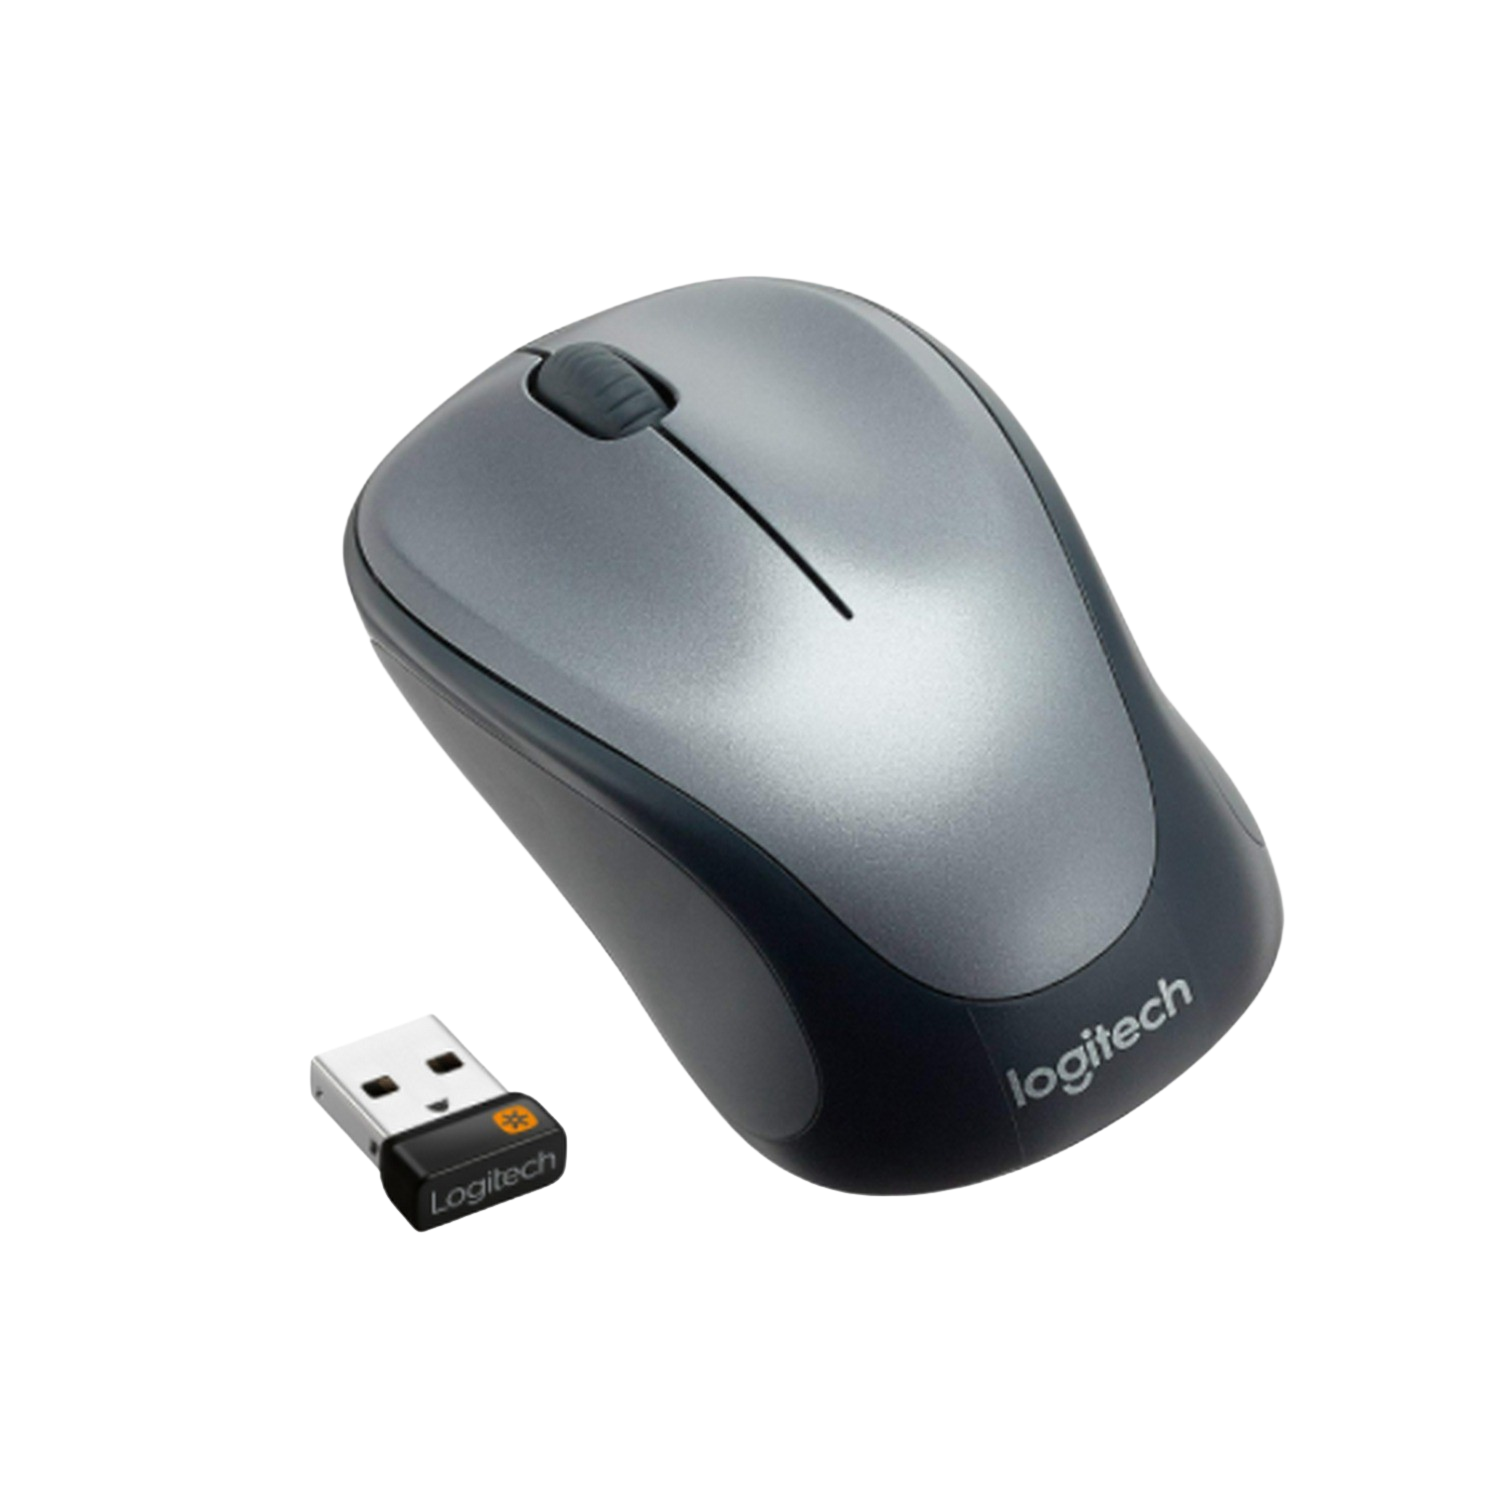 Logitech M235 1000dpi raton optico inalambrico negro wireless mouse con nano receptor usb plata sin cables 910002201 1000